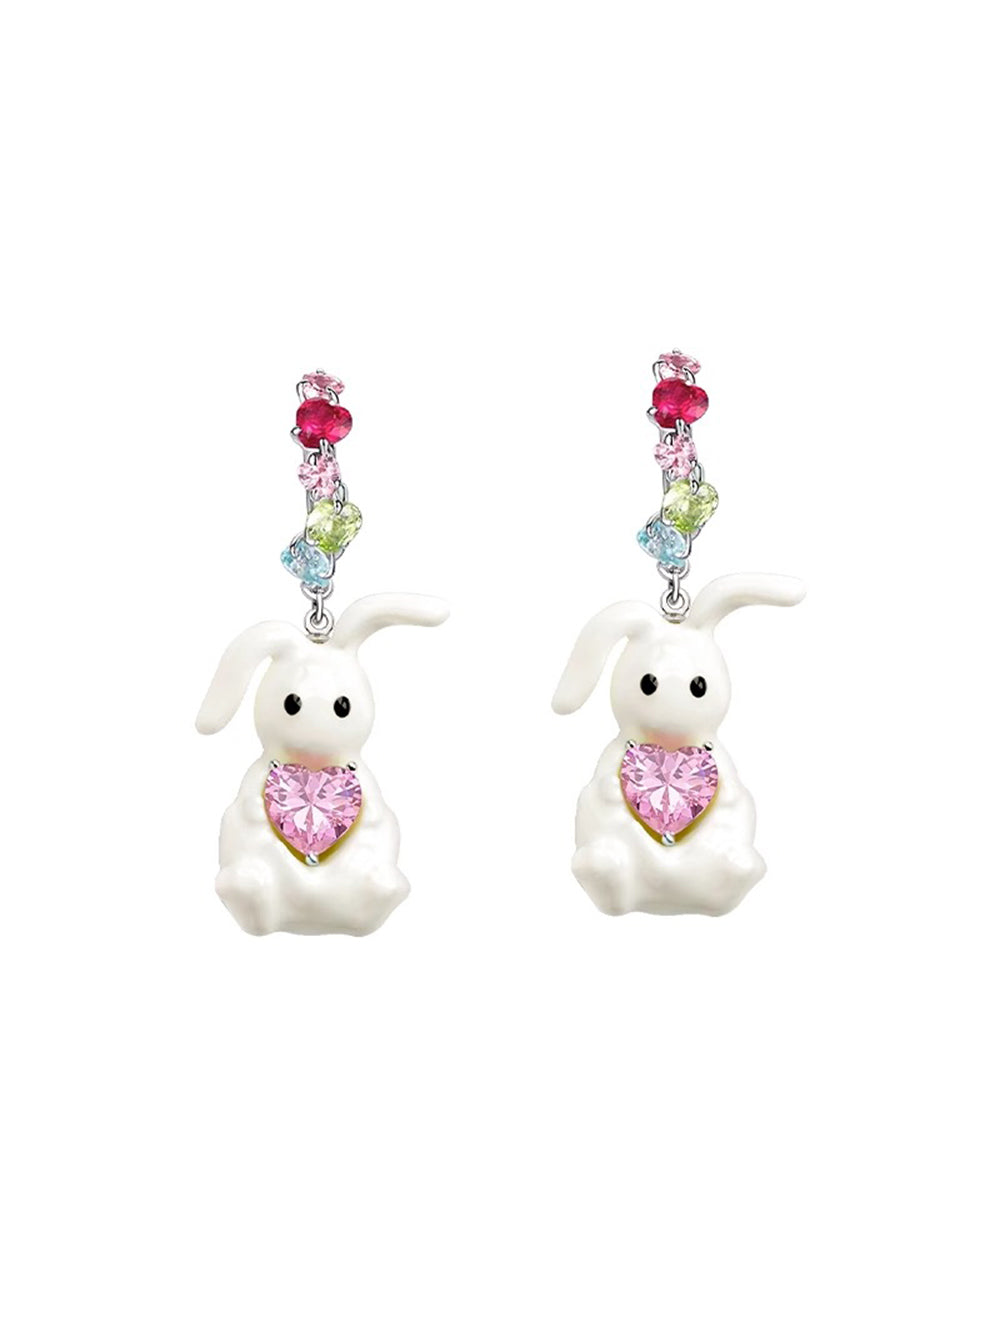 MUKTANK×SUN HUNTER Fantastic Forest + 3D Printed Enamel Earrings White Rabbit